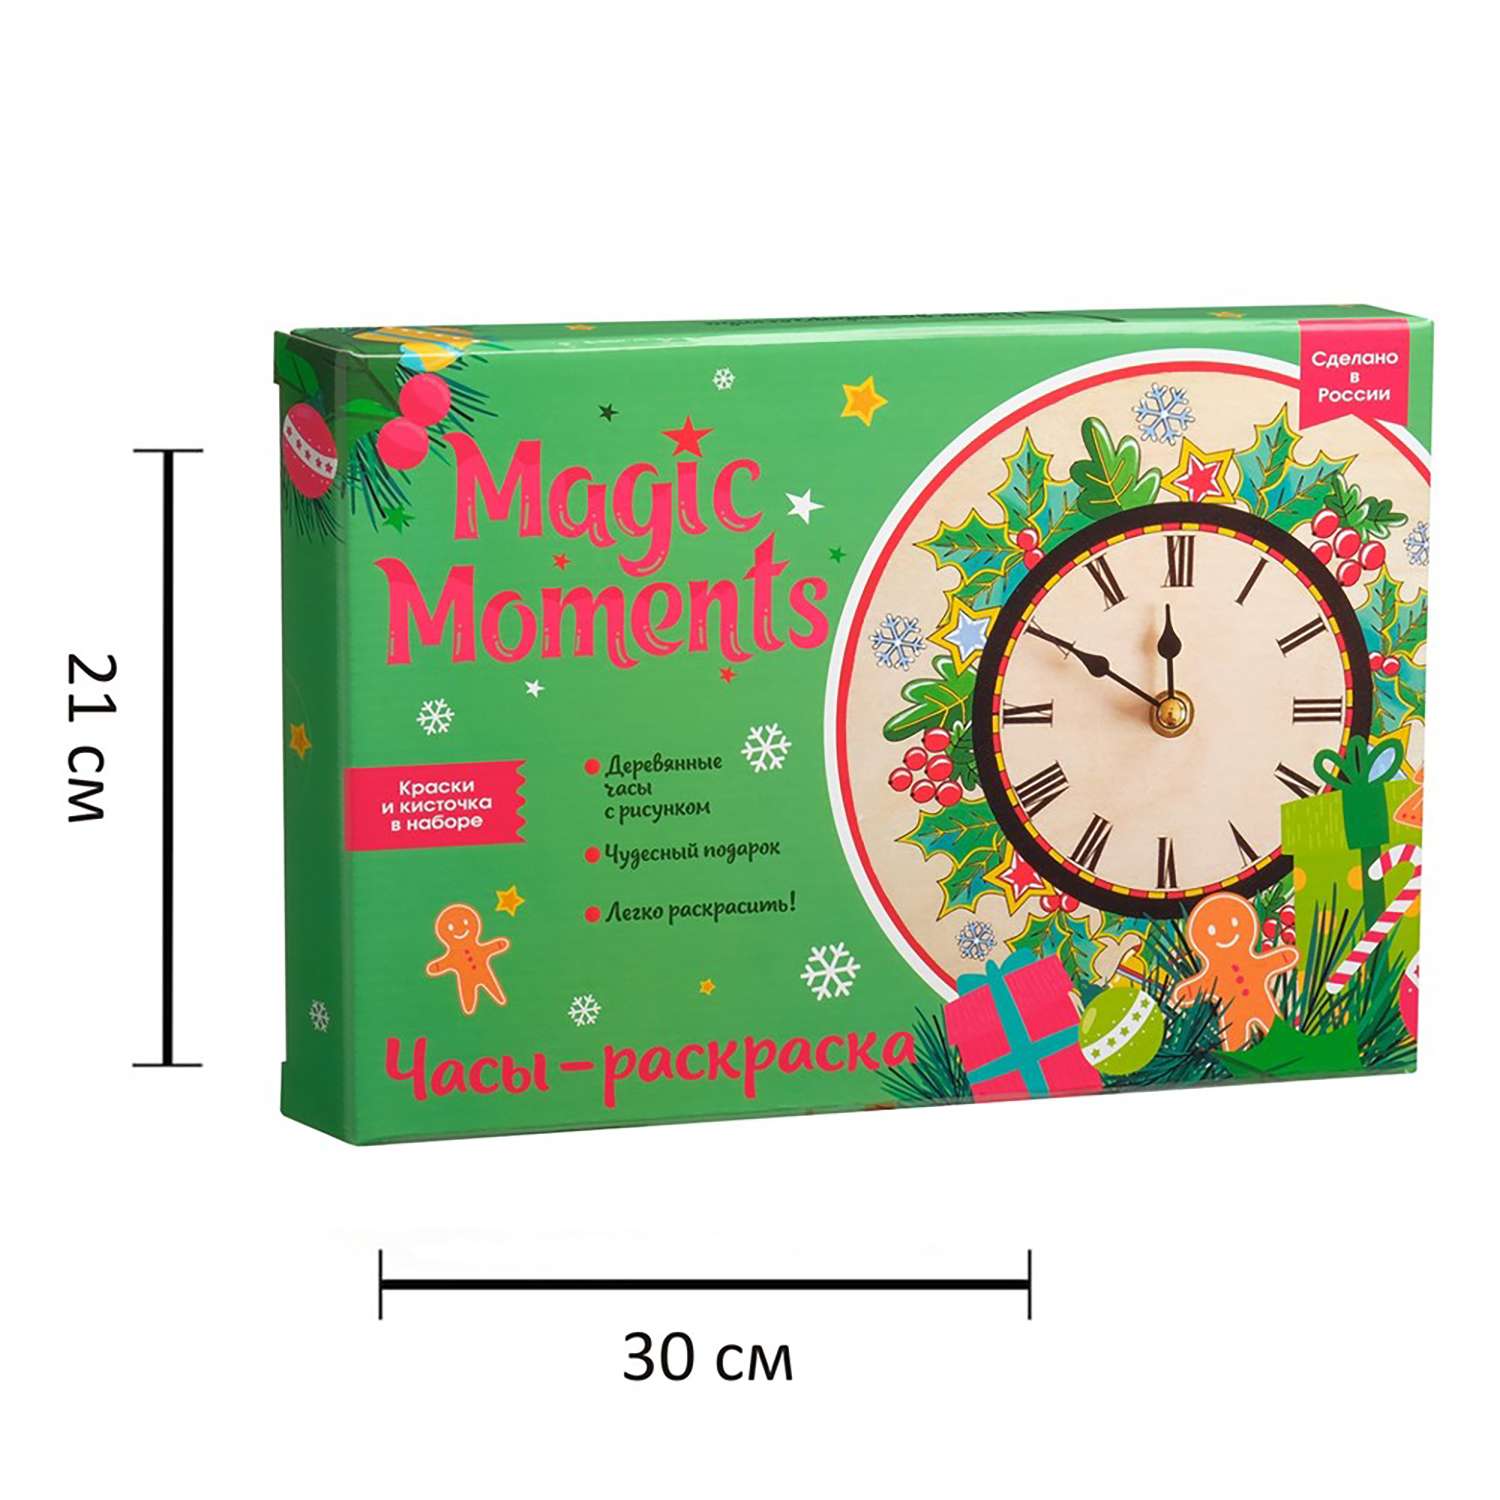 Часы-раскраска Magic Moments Новогодний набор для росписи - фото 9